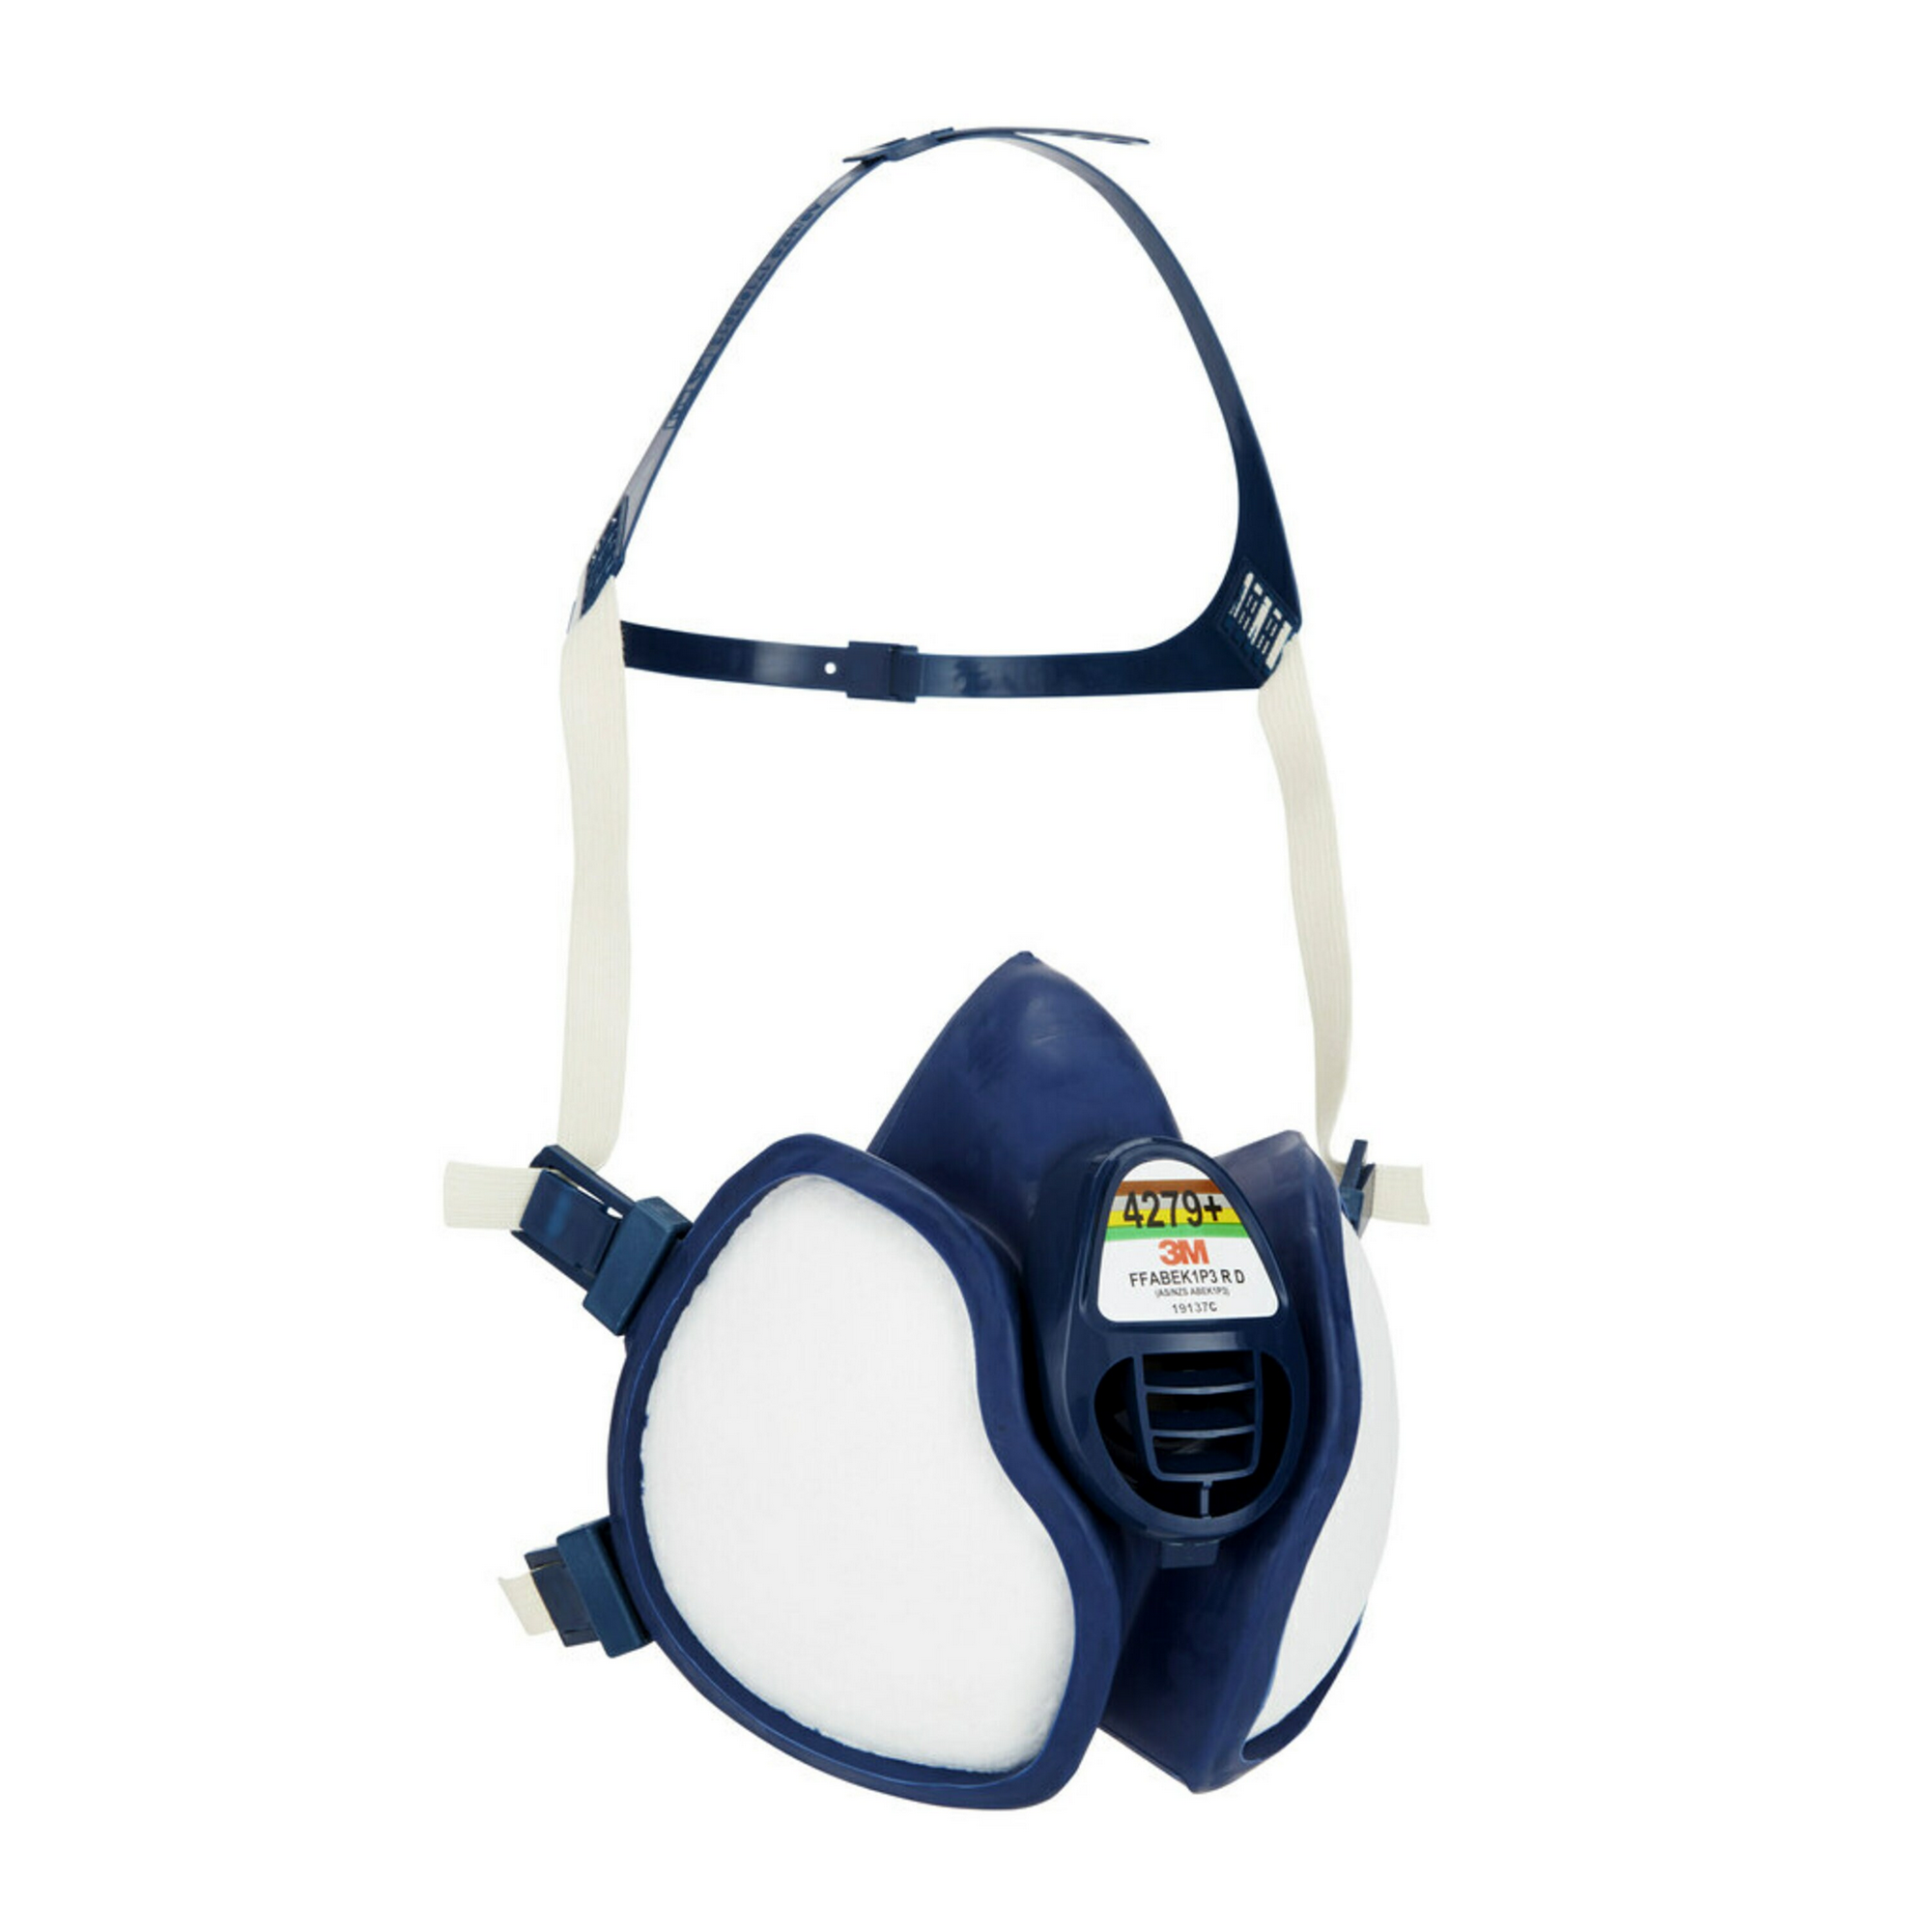 ABEKP3-Atemschutzmaske gegen chemische Stoffe '4279+' 1 Stück + product picture